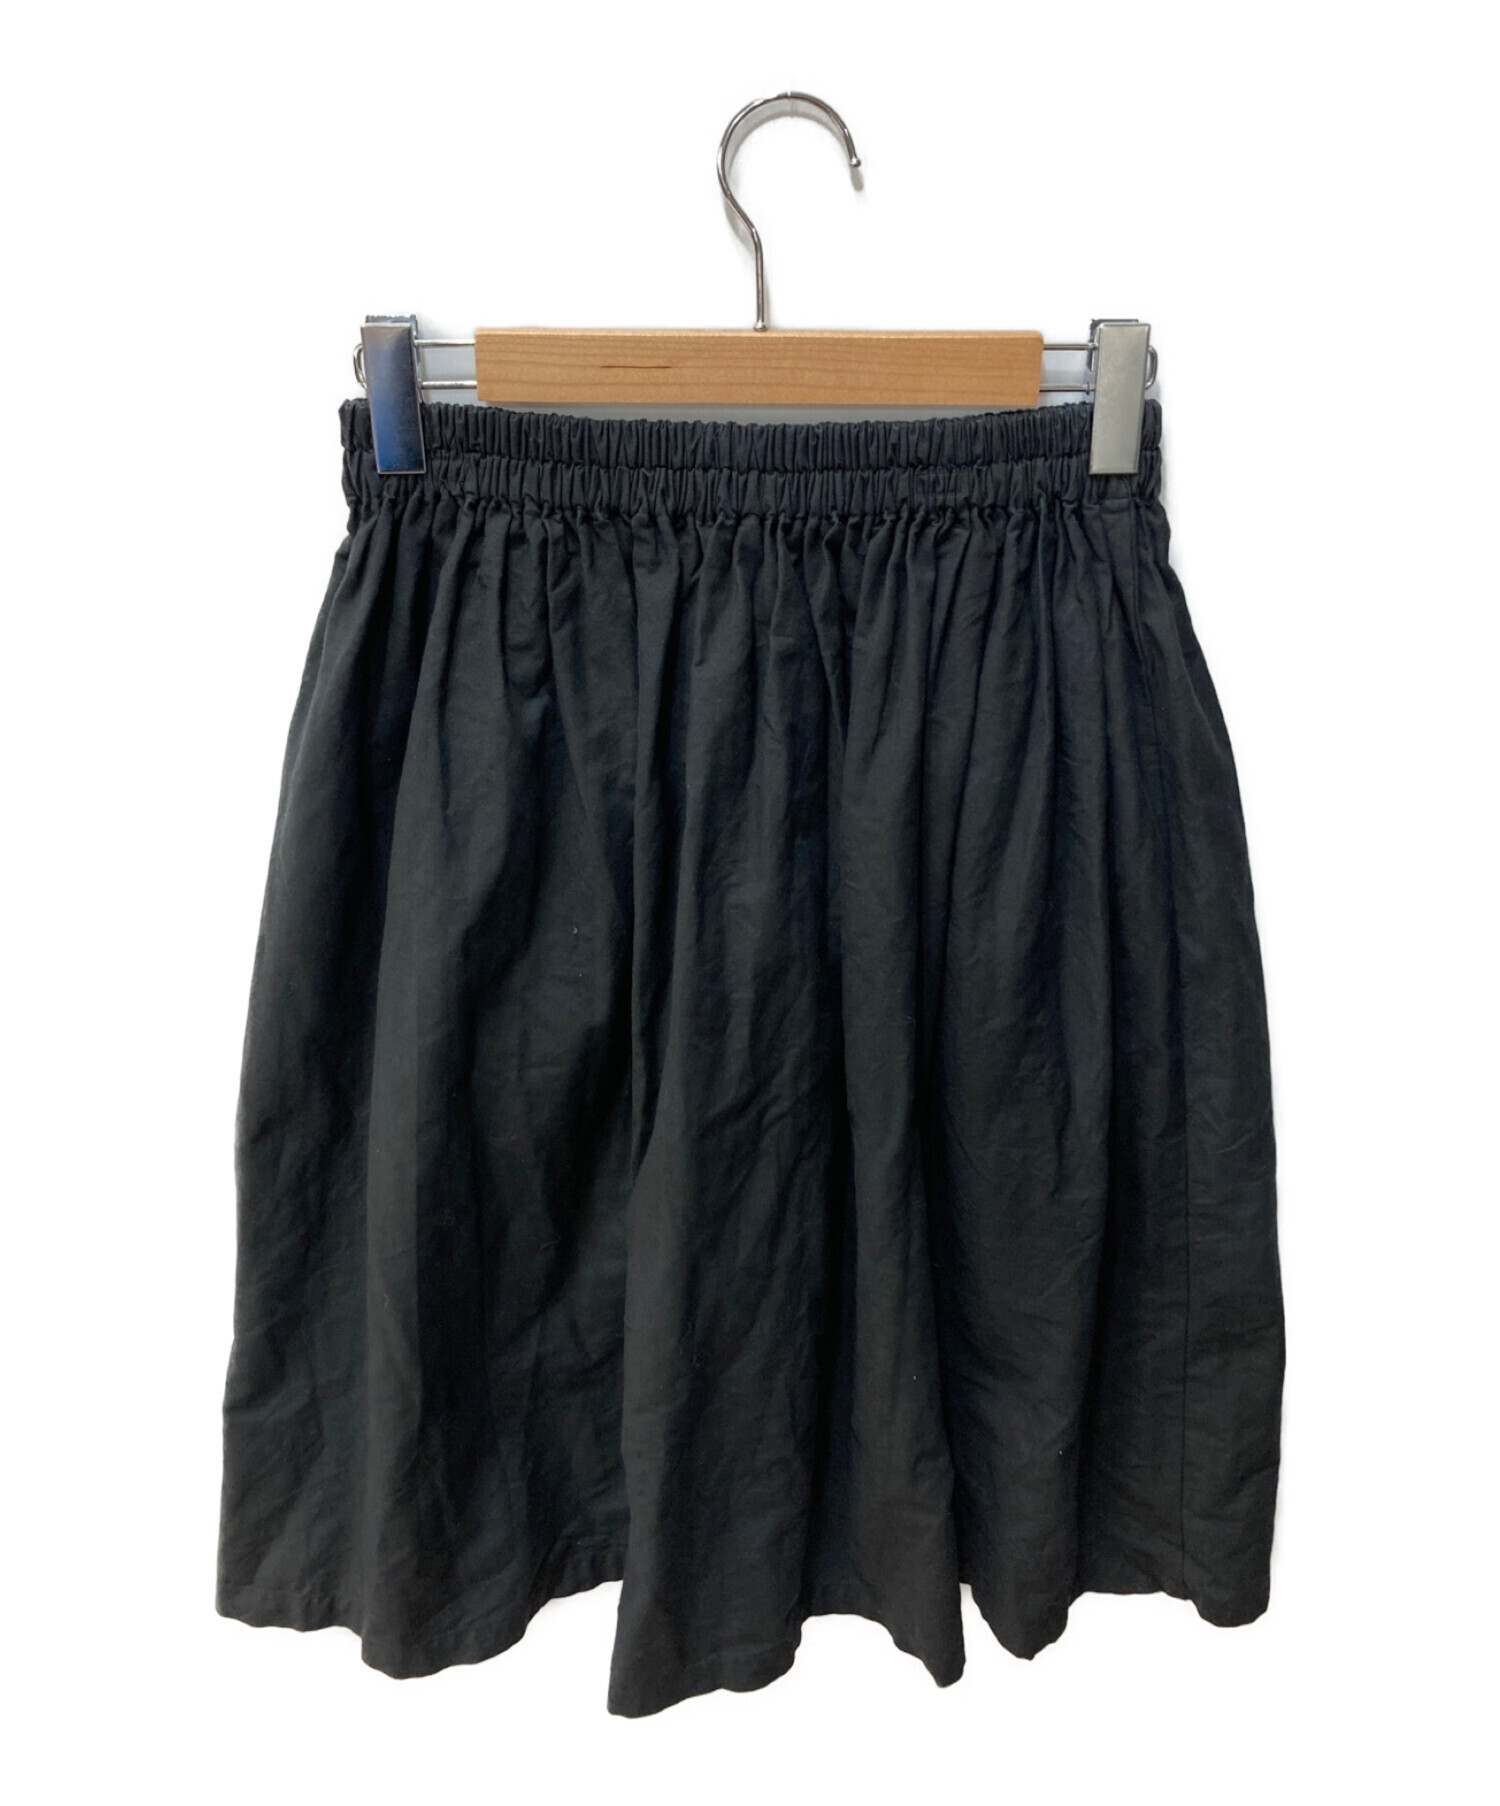 homspun (ホームスパン) コーミングマットギャザースカート ブラック サイズ:S